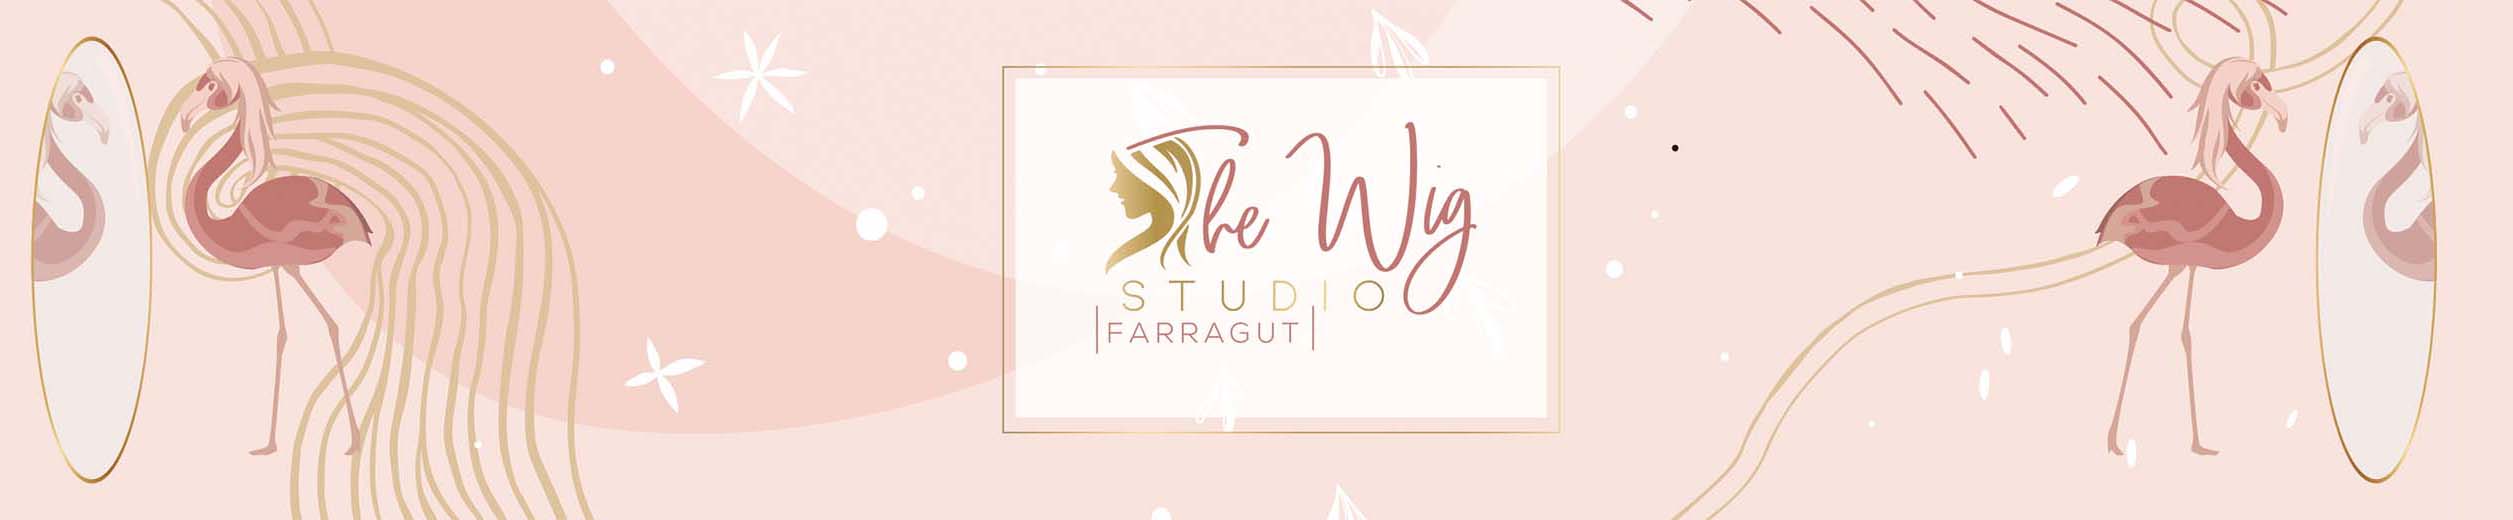 The Wig Studio Farragut